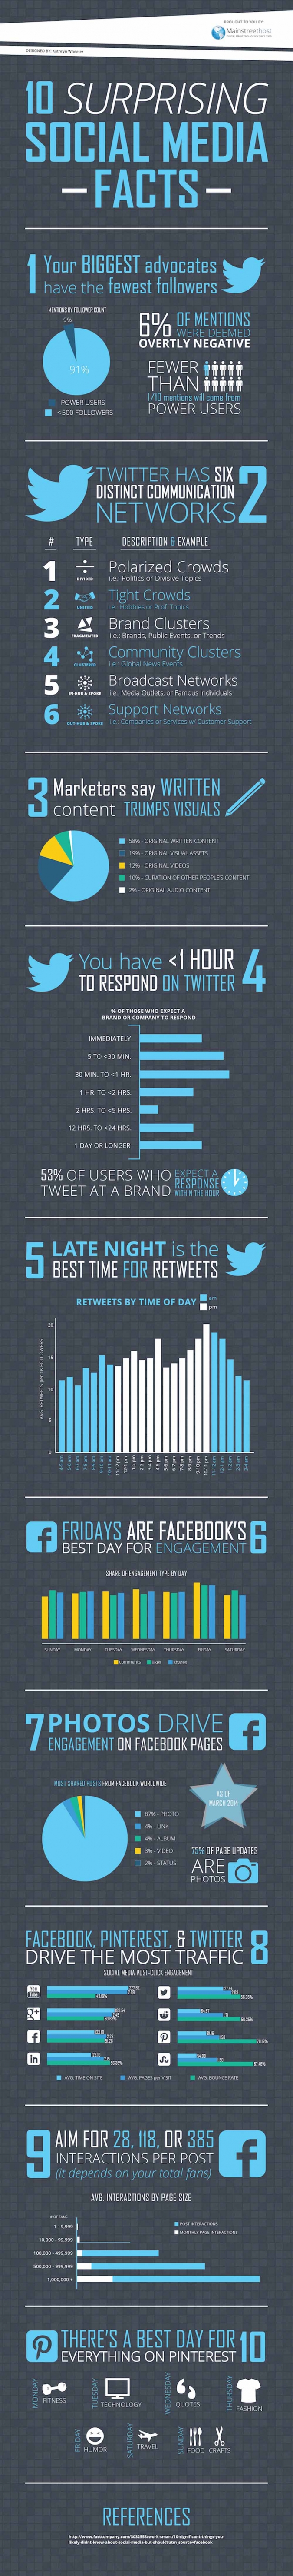 Infografik Surprising Social Media Facts - Social Media Marketing Tipps und Statistiken